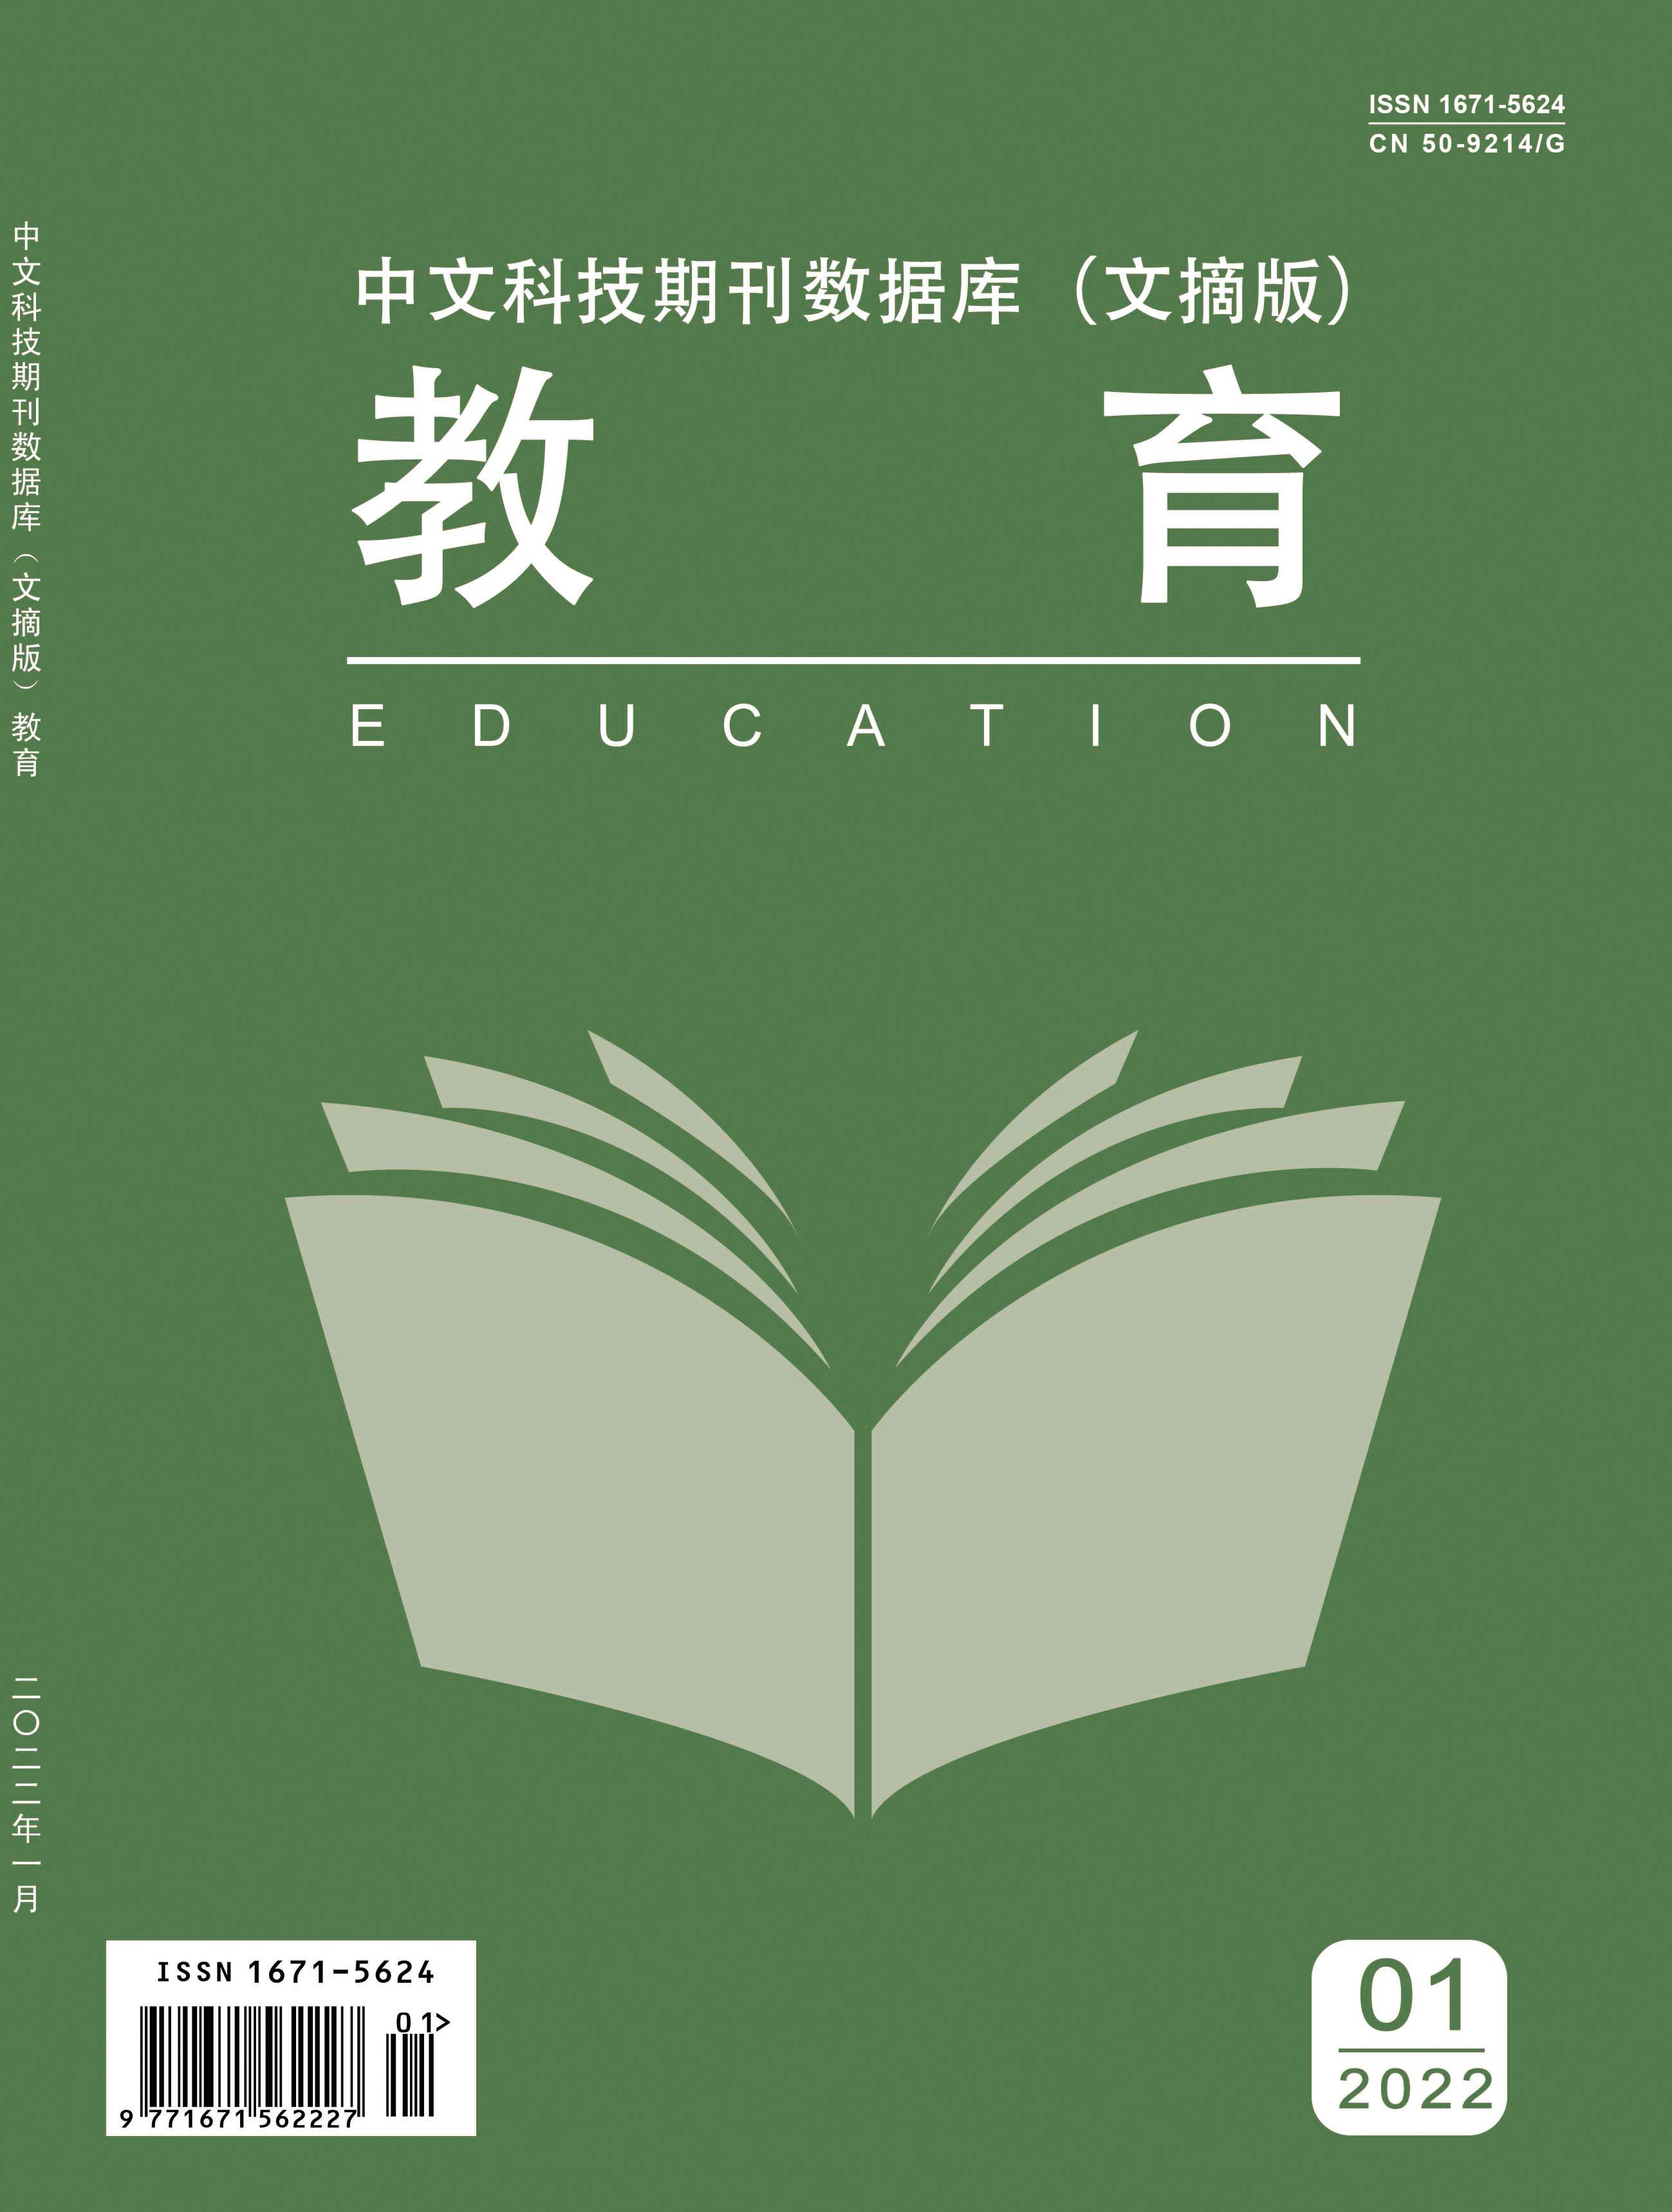 《教育》杂志【网站】-【编辑部征稿】